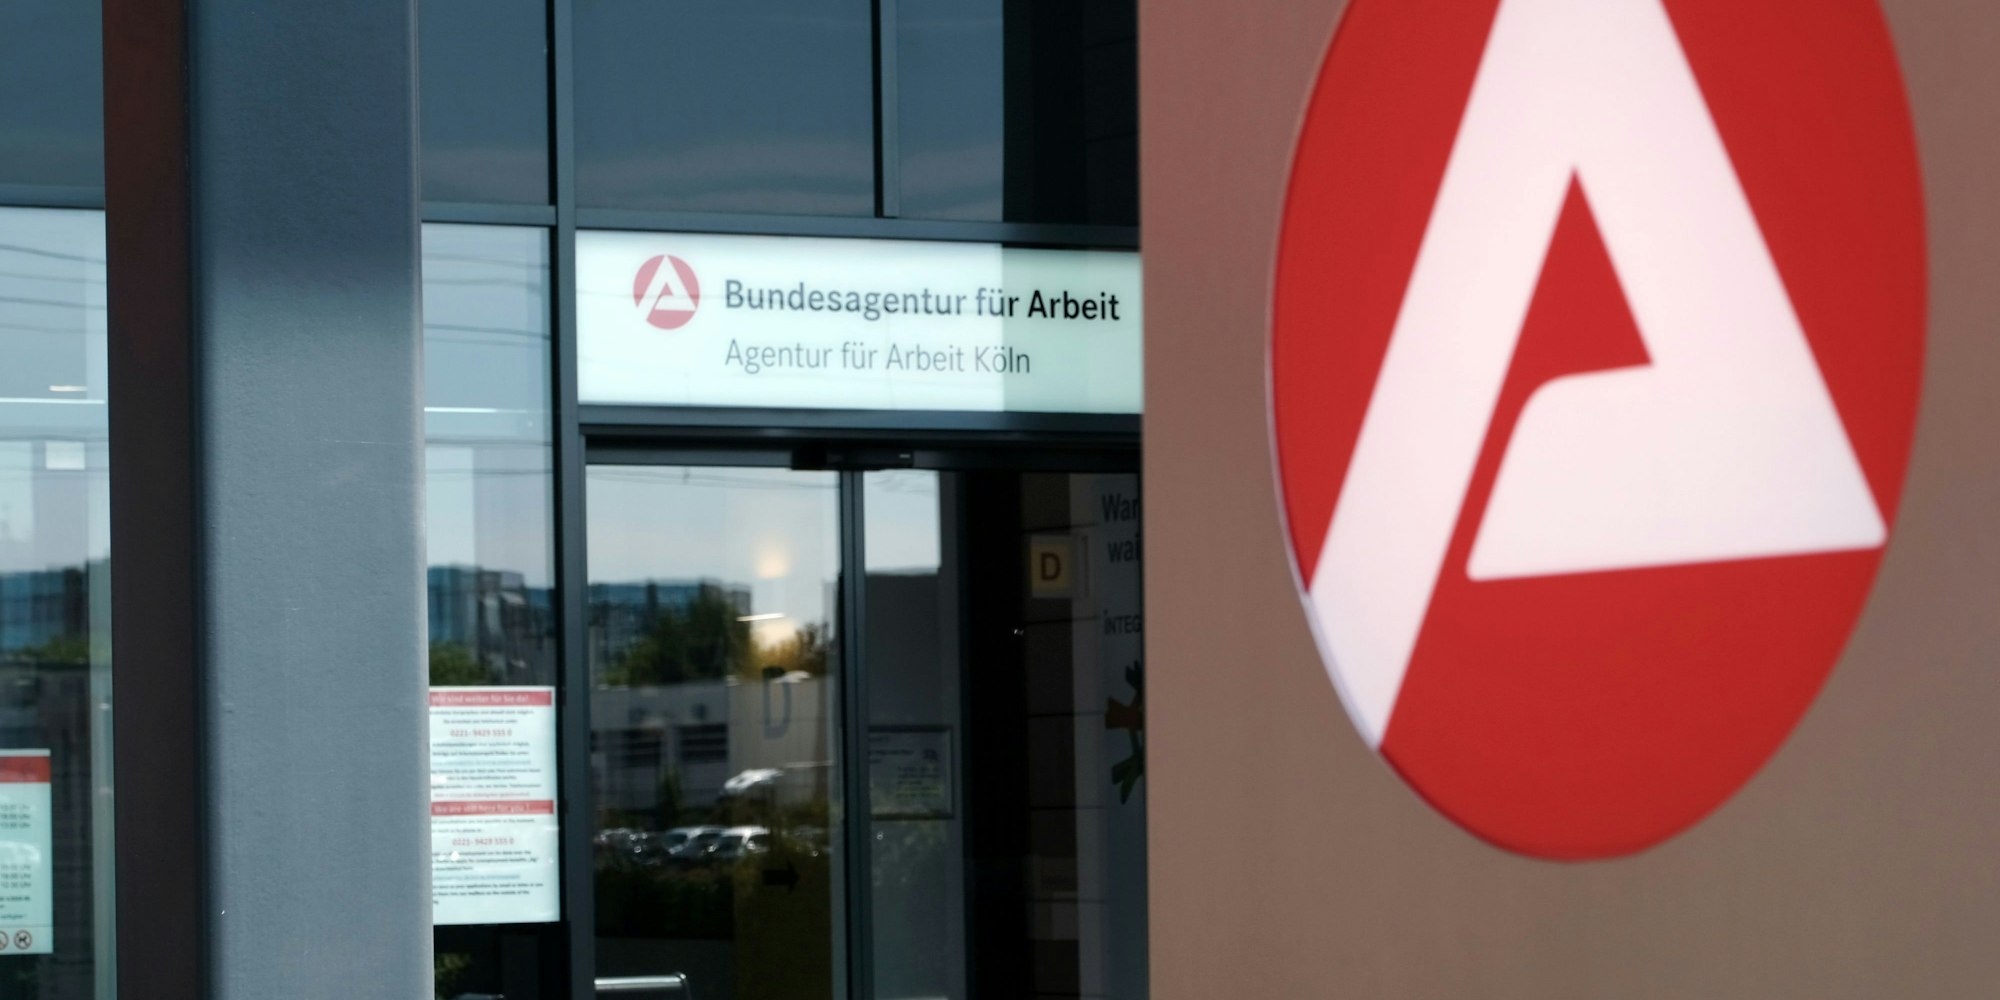 Agentur für Arbeit in Köln